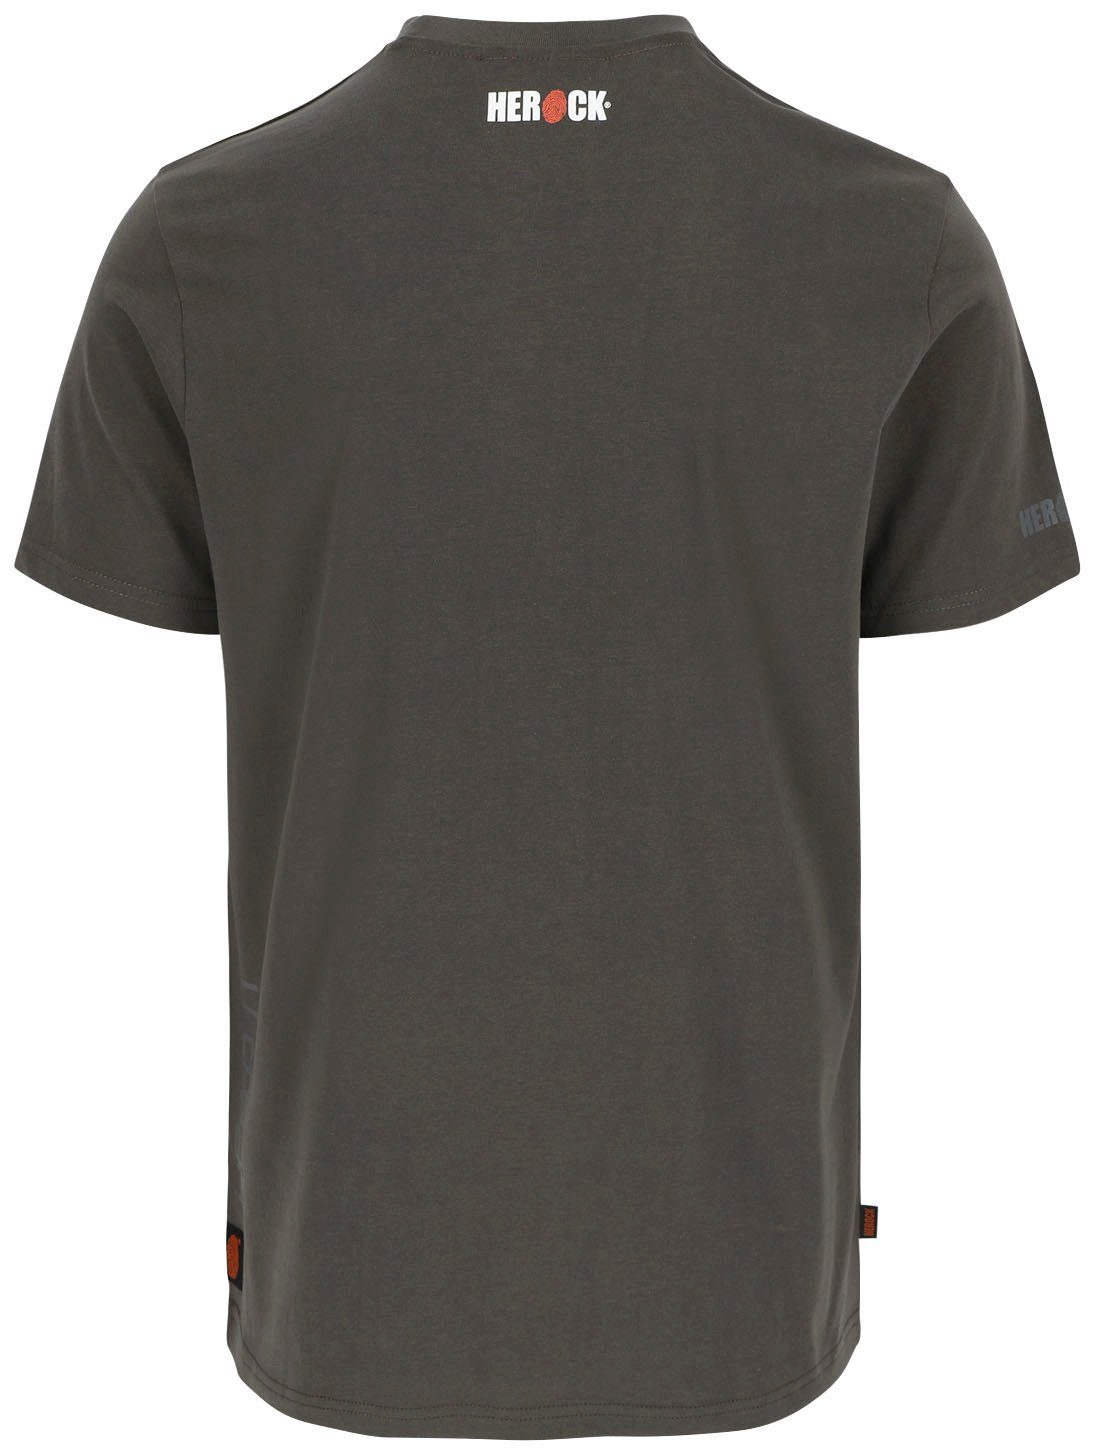 Rundhalsausschnitt, kurze kurze T-Shirt Herock grau Ärmel, Rippstrickkragen T-Shirt Ärmel Herock®-Aufdruck, Callius